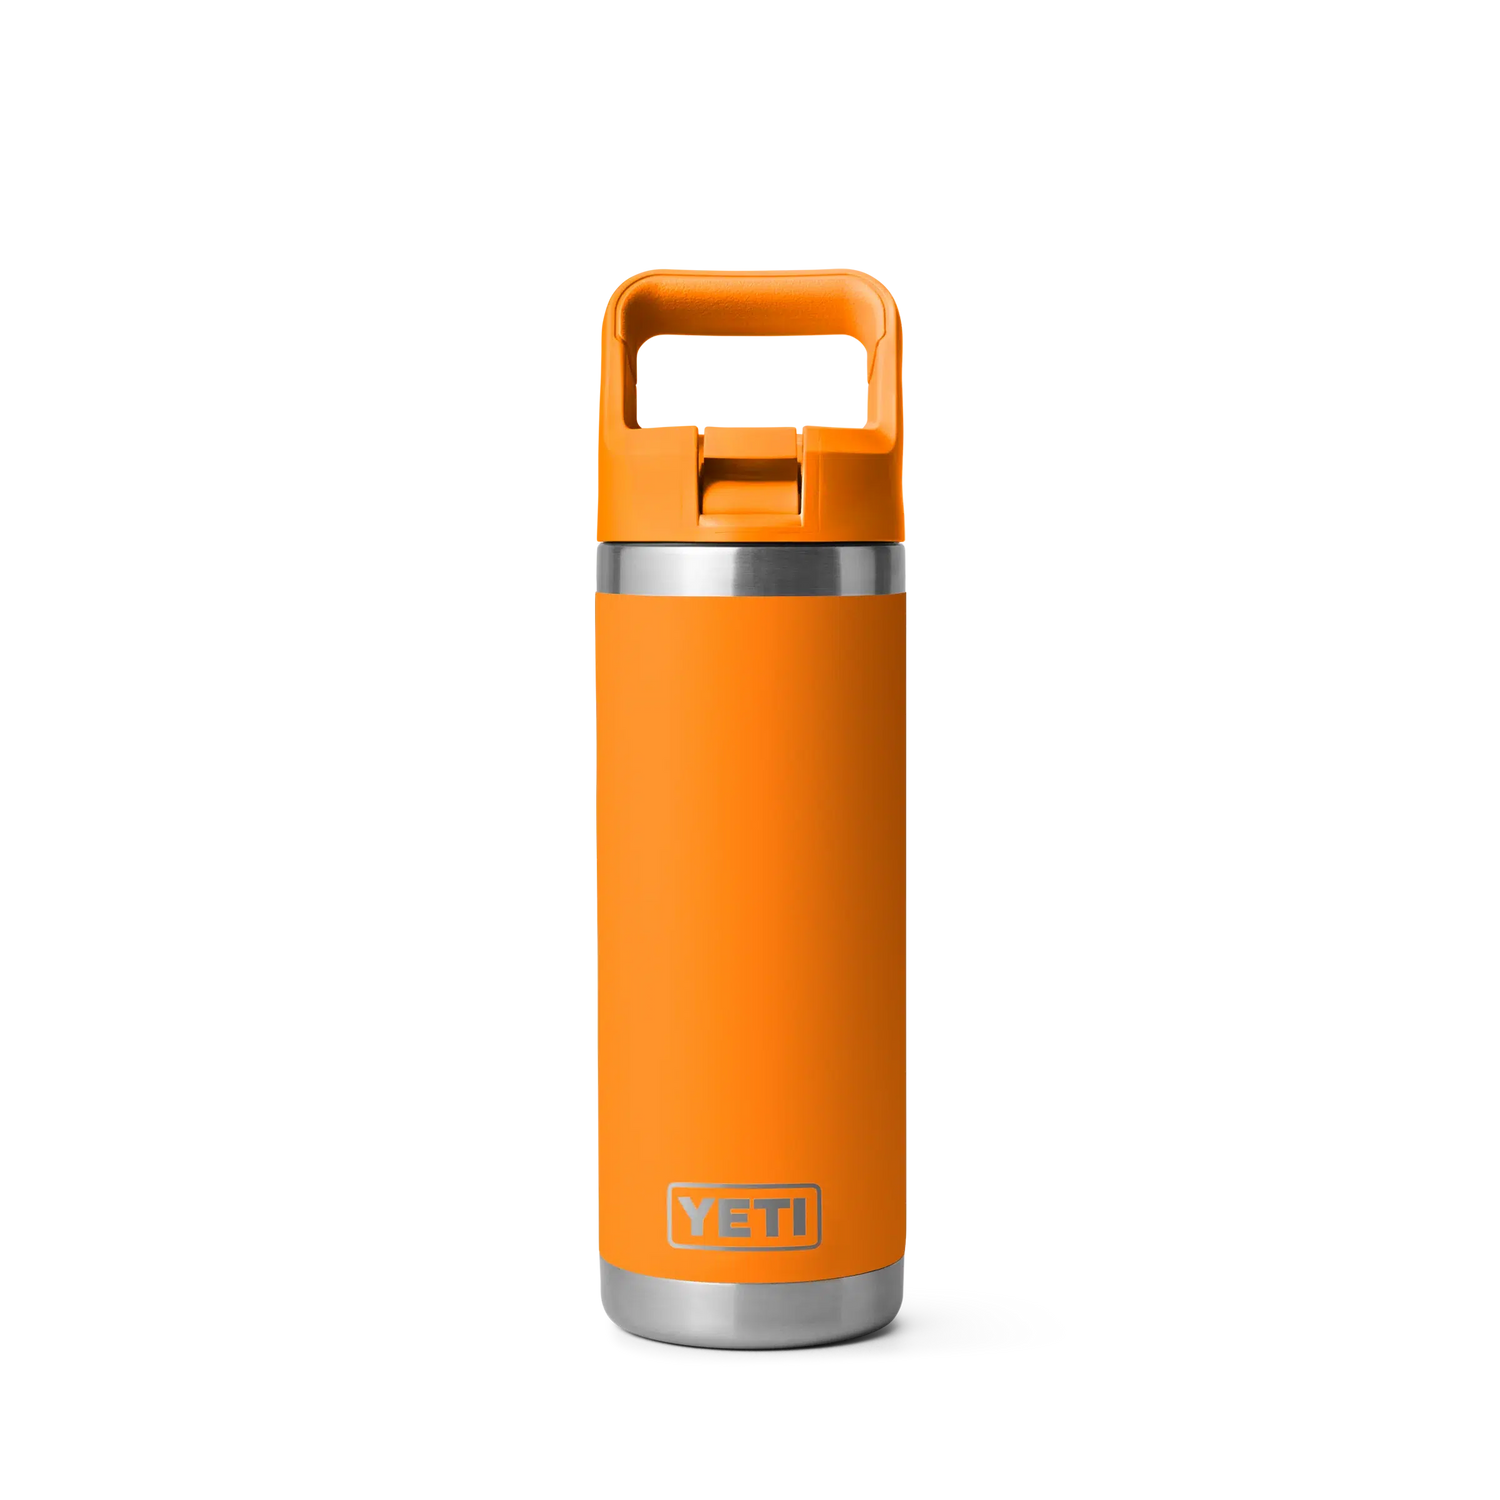 Yeti Rambler 18oz (532ml) Reusable Bottle with Straw Cap-Coolers & Drinkware-Yeti-King Crab Orange-Fishing Station